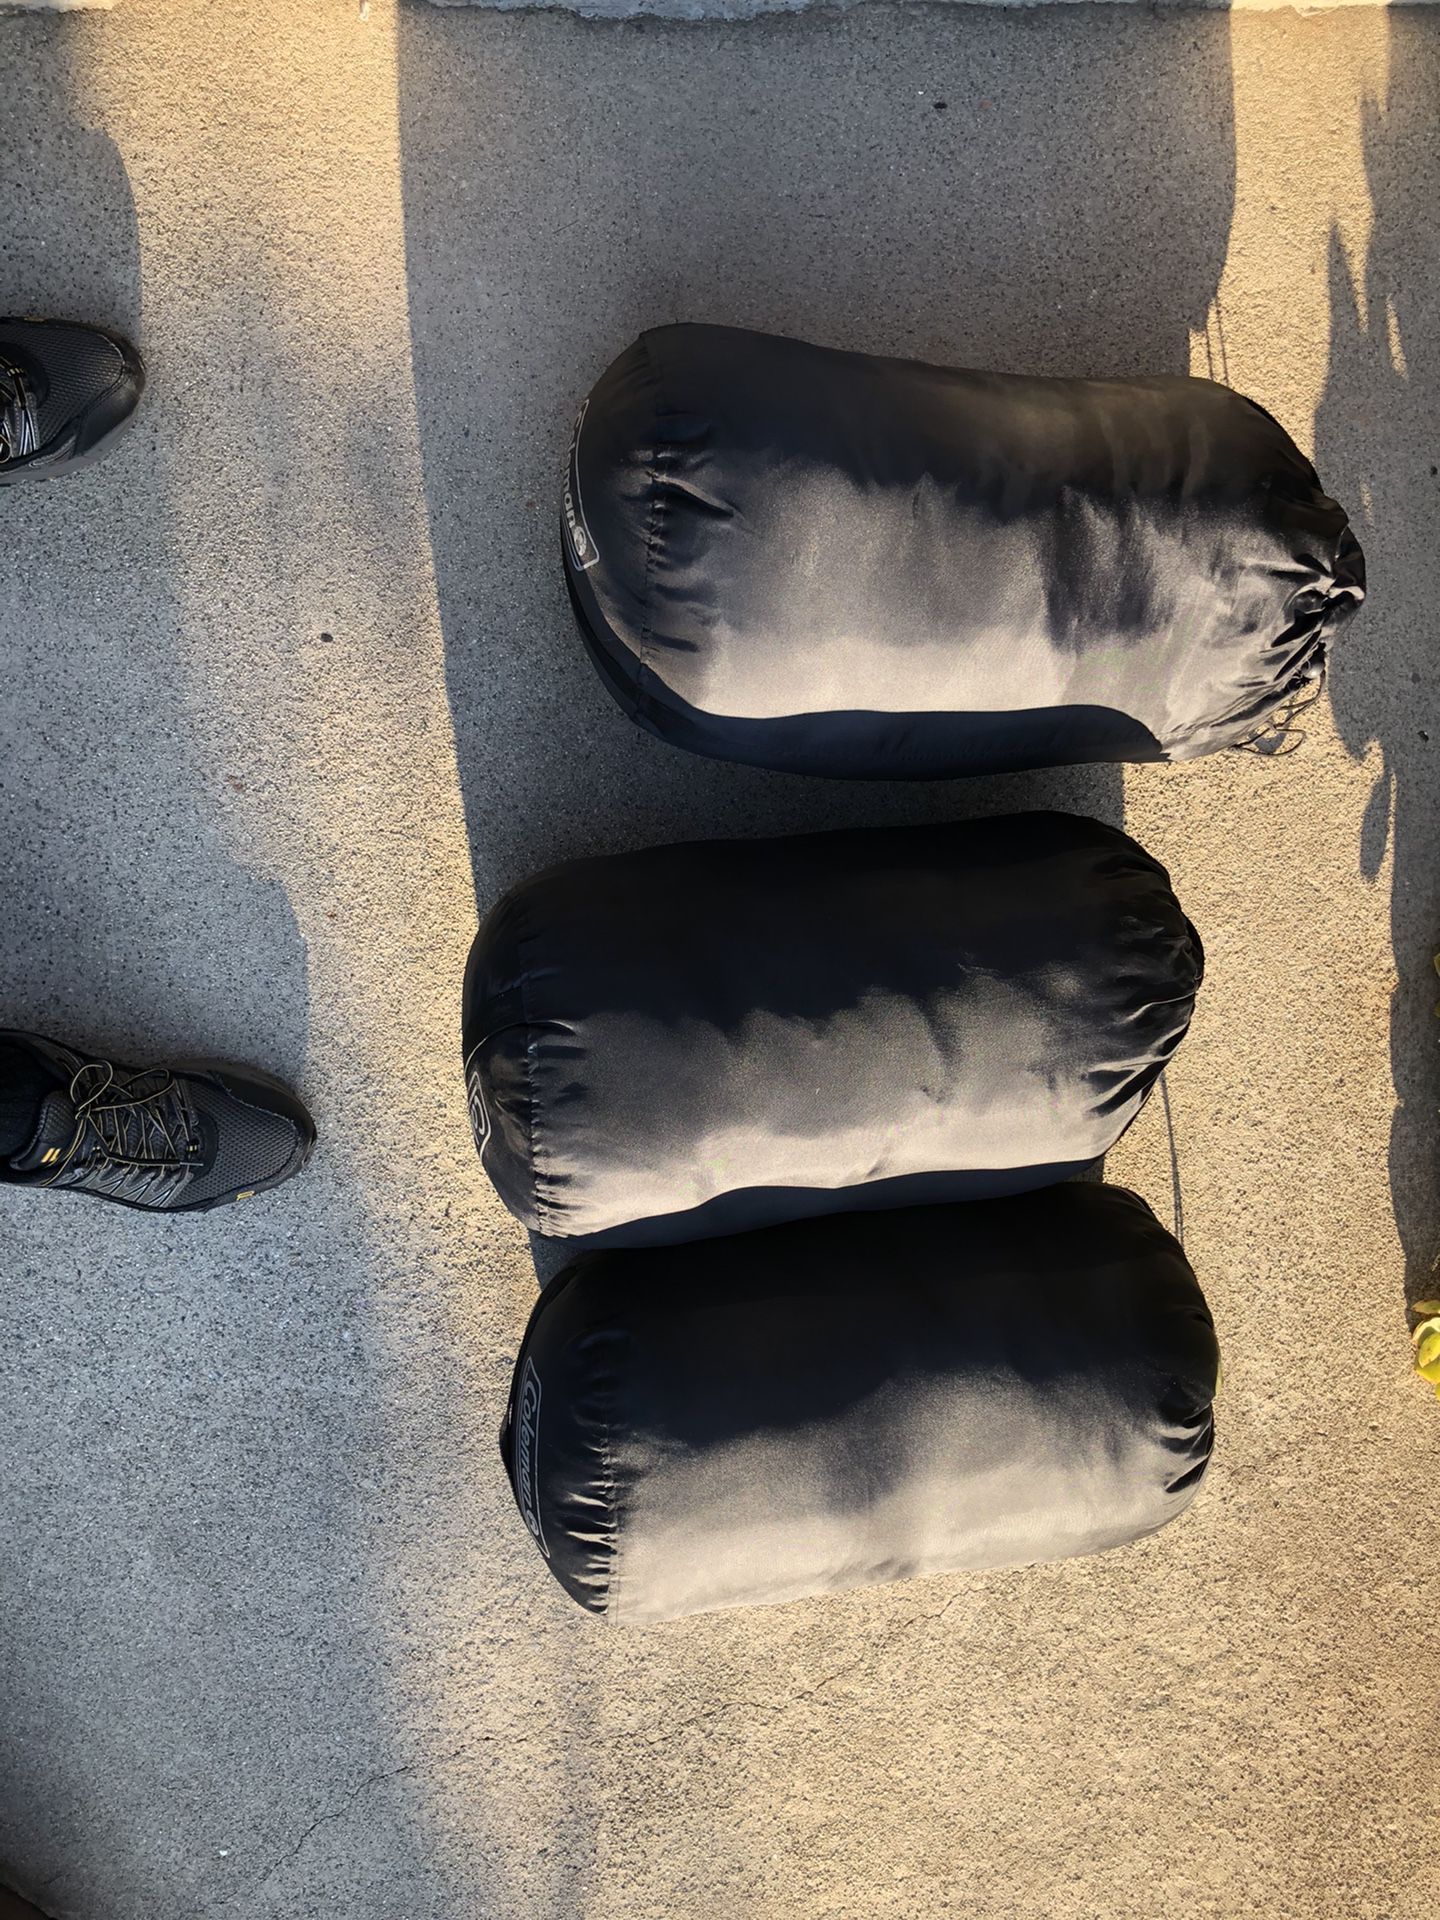 3 Black Coleman Sleeping Bags